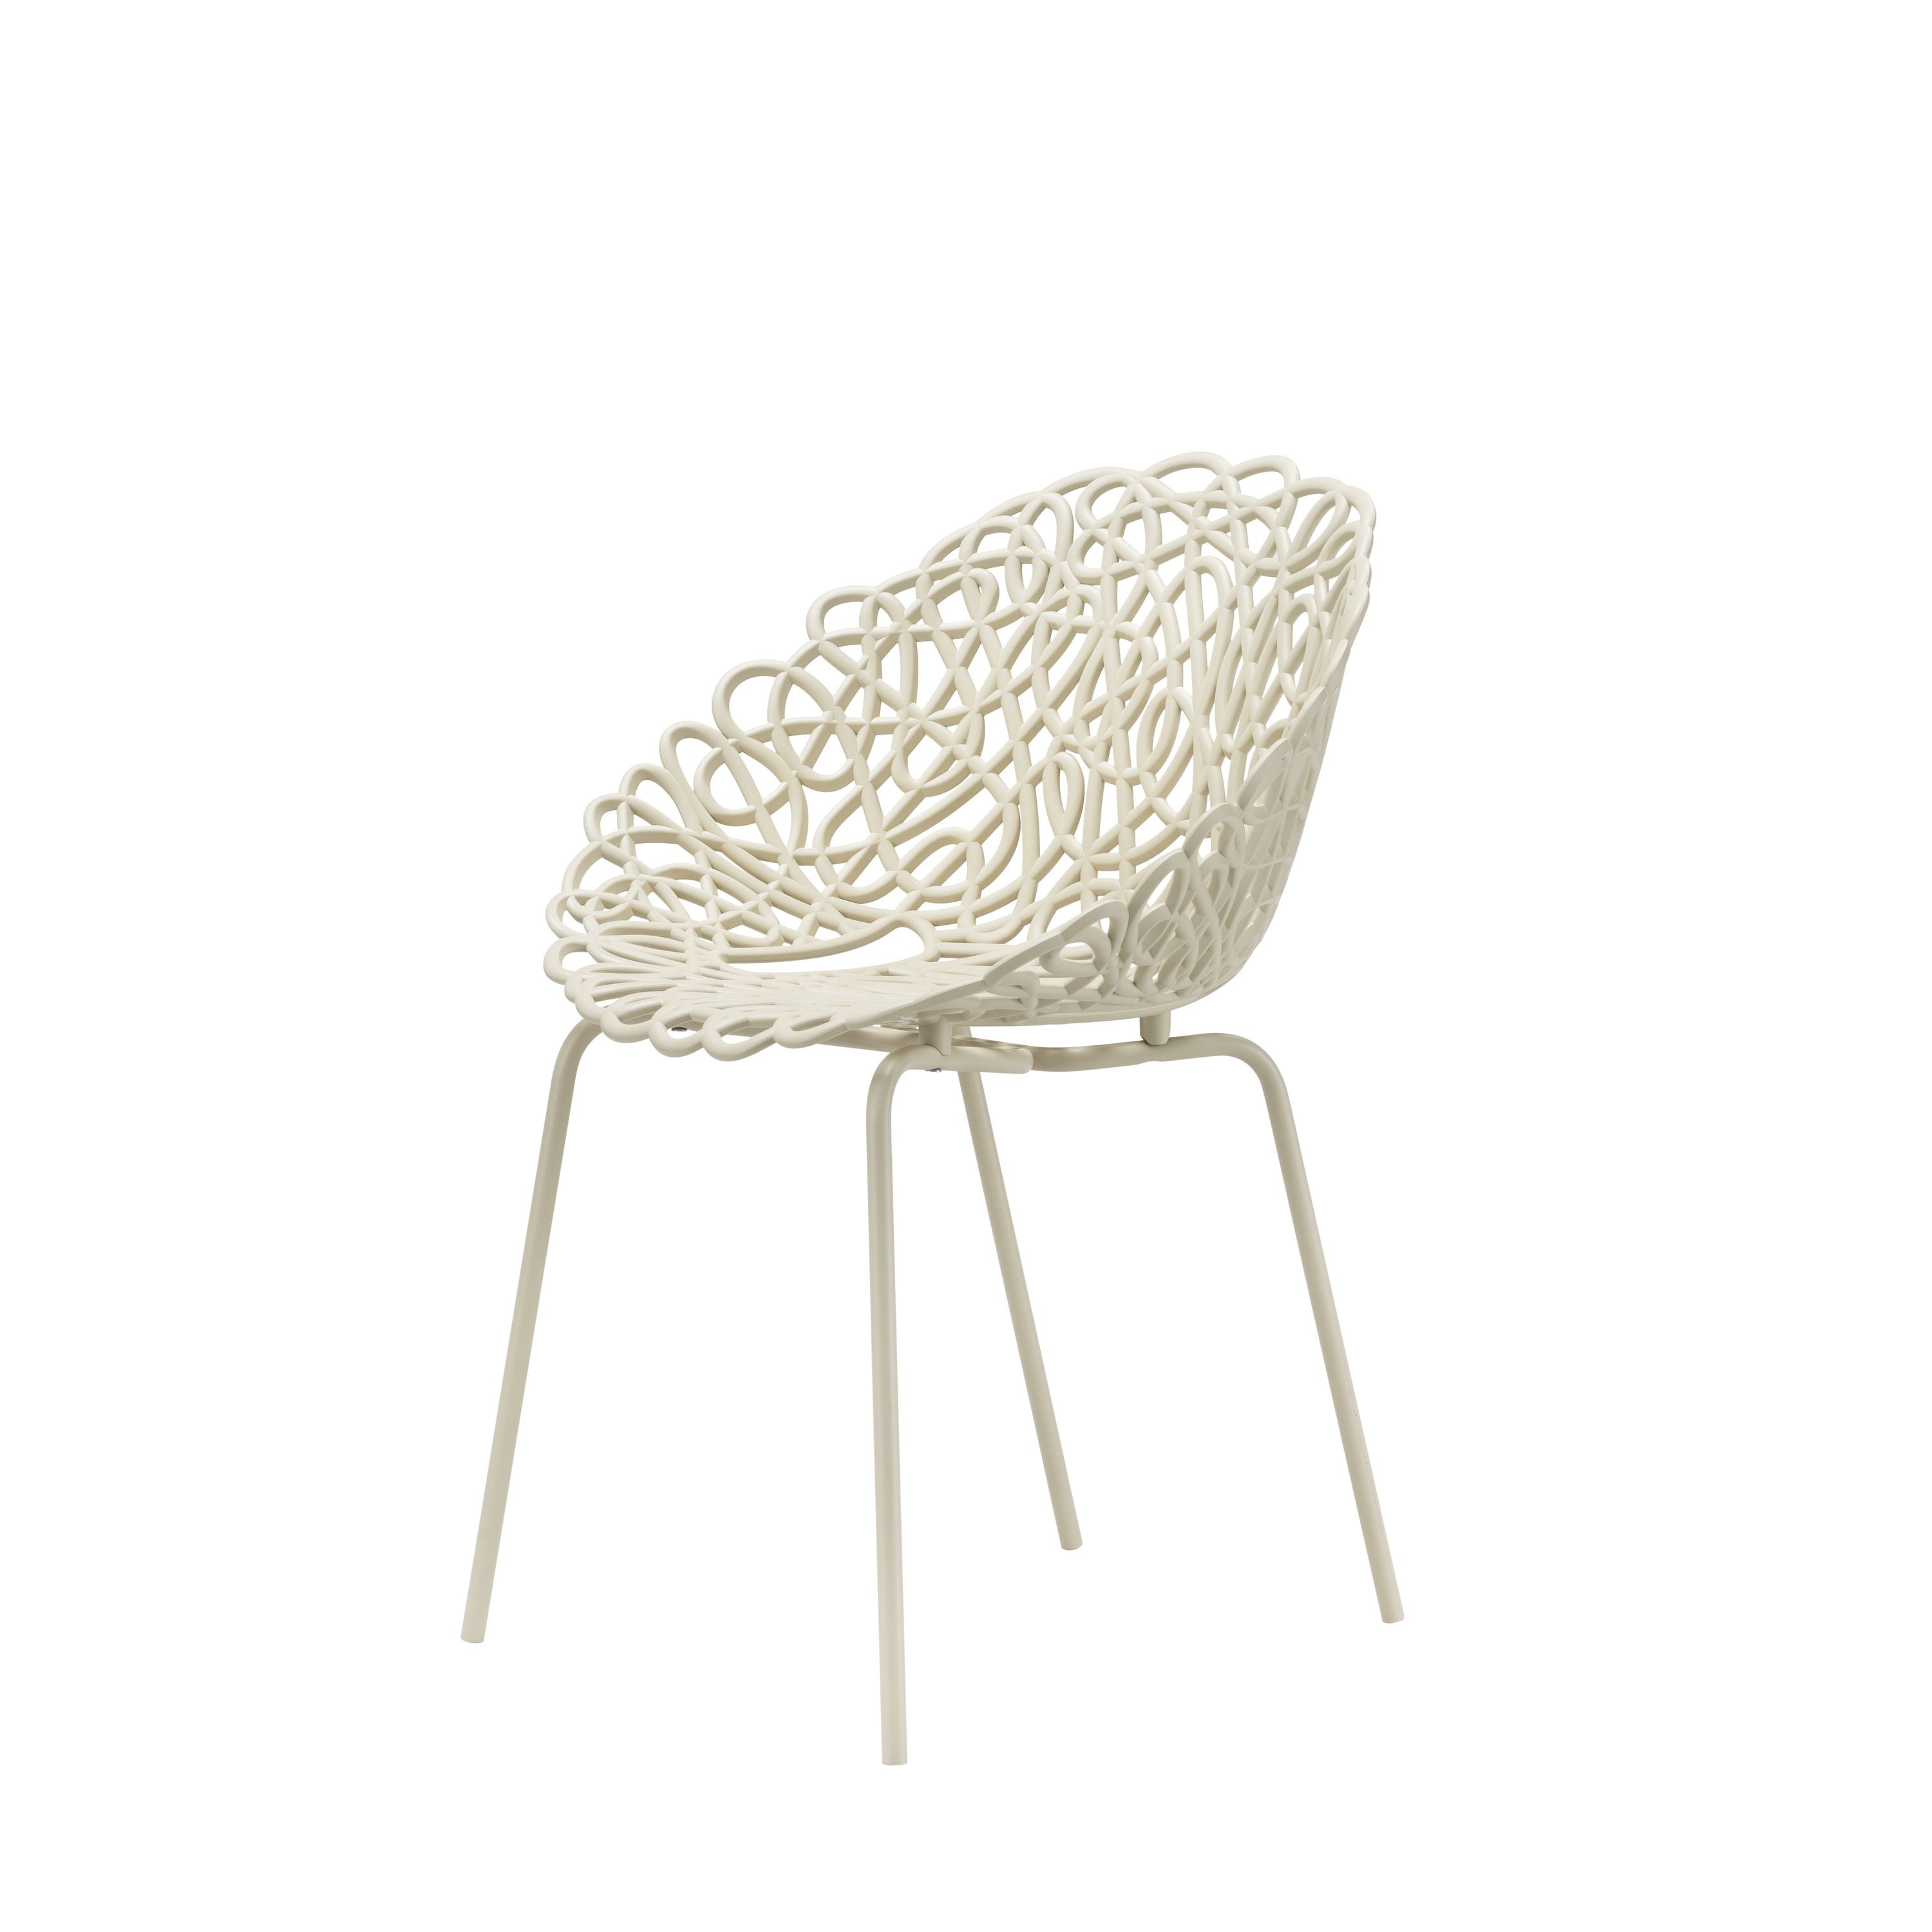 Qeeboo Bacana Chair Indoor Set Of 2 Pcs, Ivory